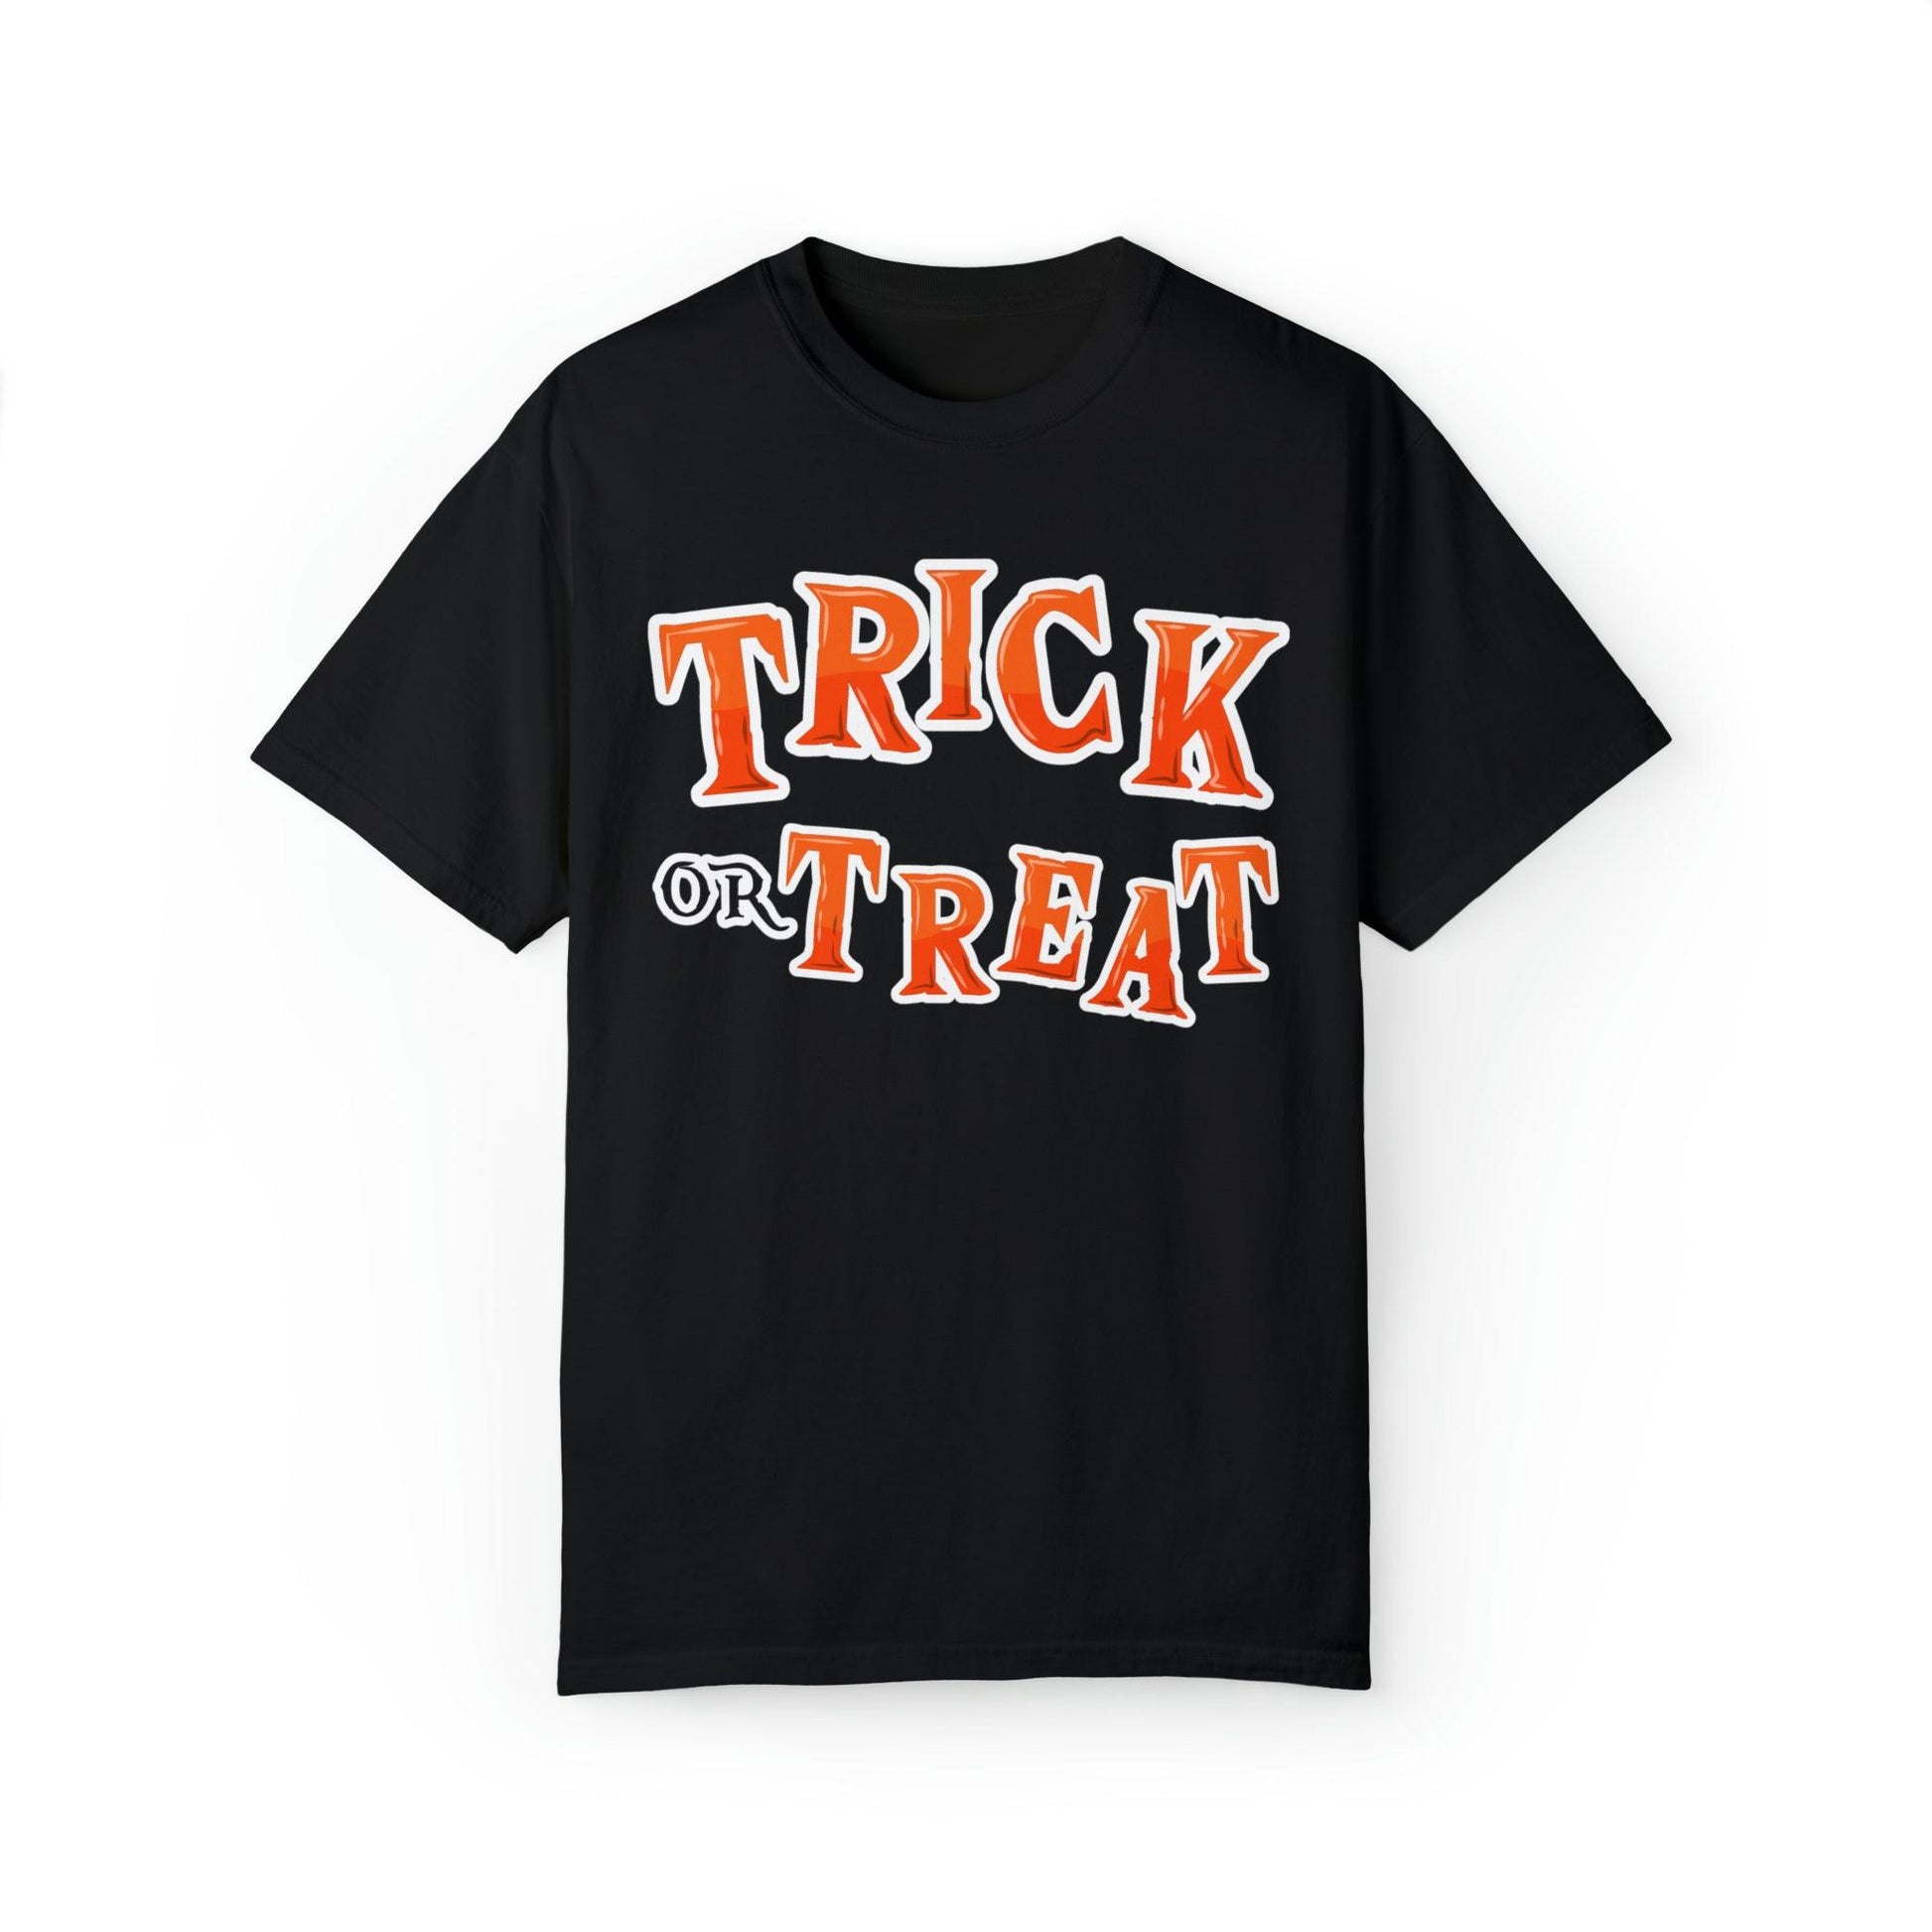 Retro Halloween Tshirt, Trick or Treat Shirt Vintage Shirt Halloween Shirt Cute Spooky Shirt, Halloween Gift Halloween T-shirt - Giftsmojo